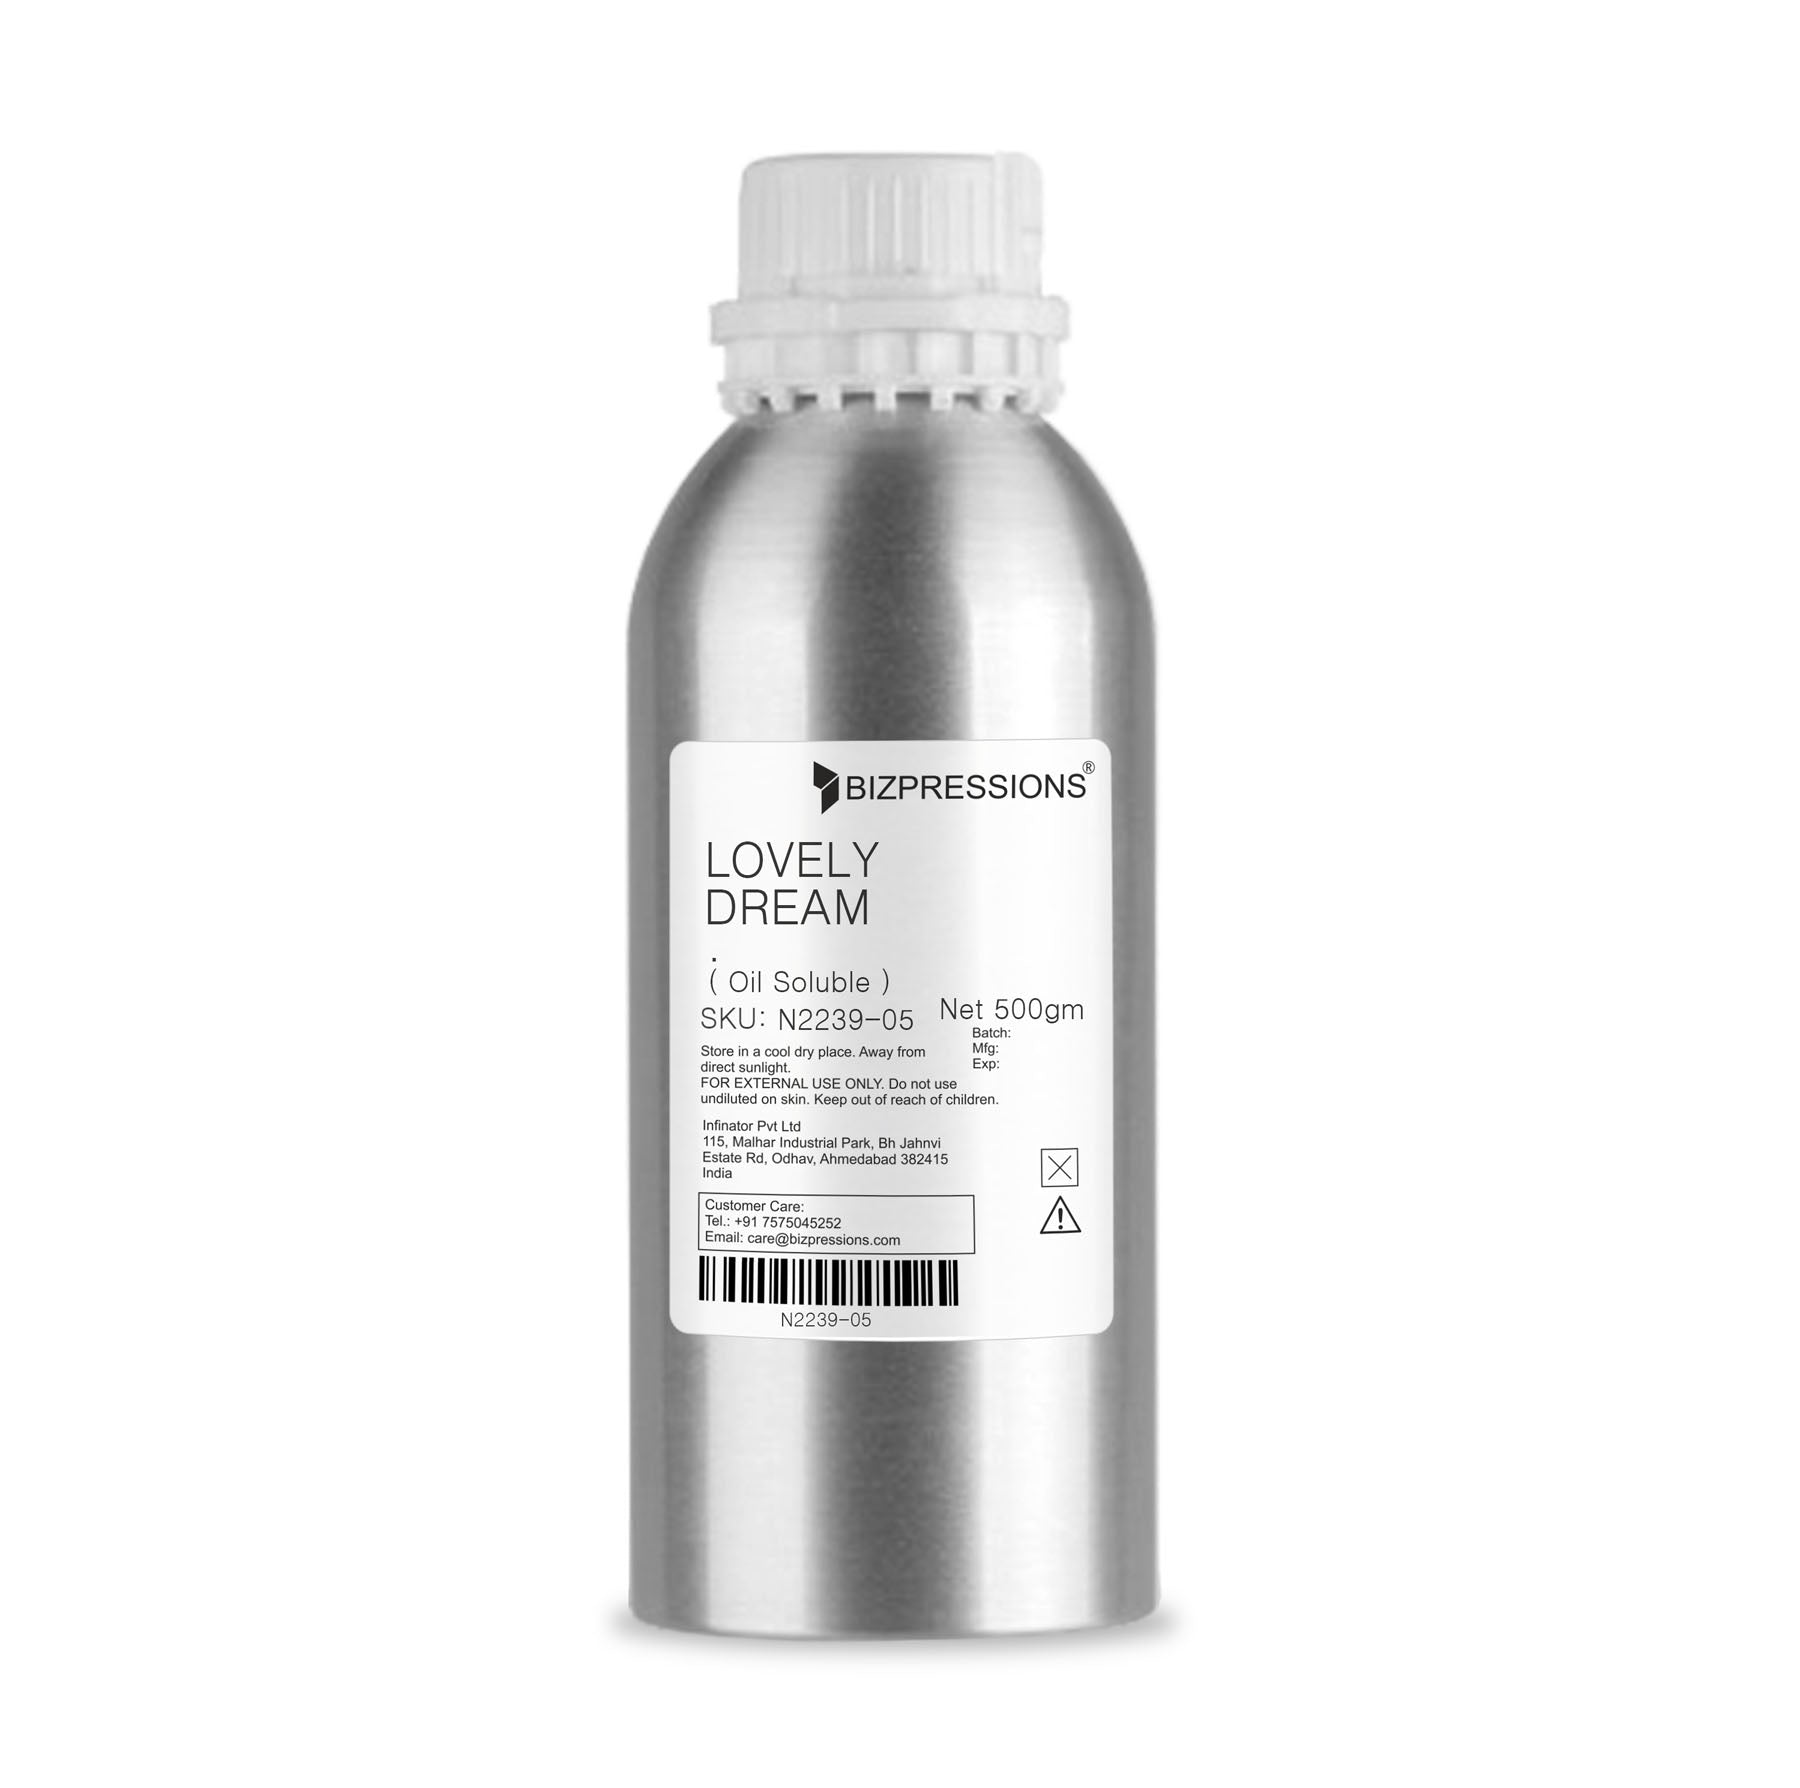 LOVELY DREAM - Fragrance ( Oil Soluble ) - 500 gm